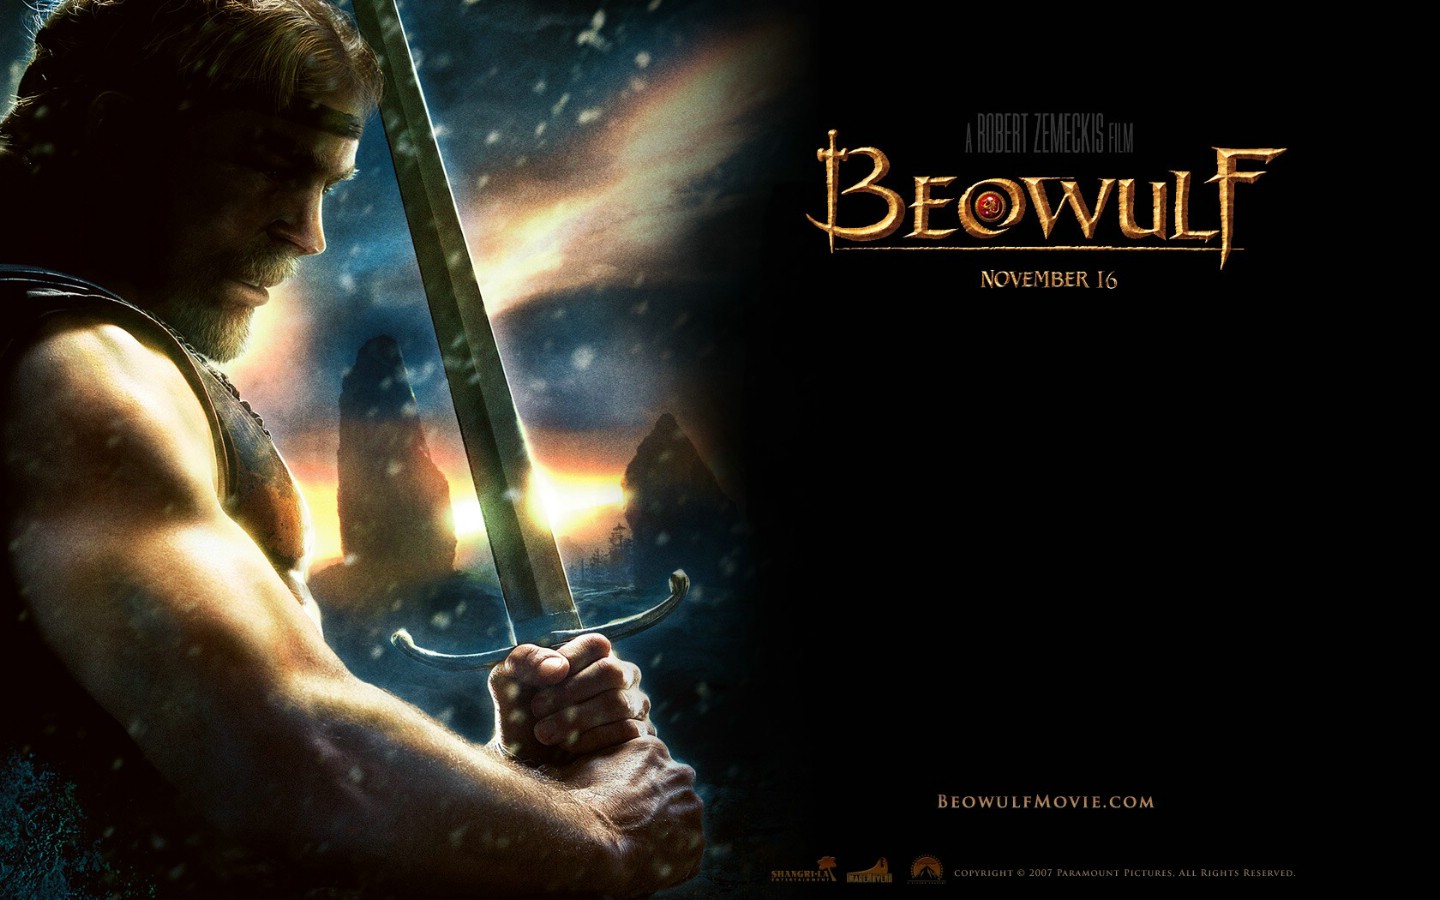 壁纸1440x900电影壁纸 贝奥武夫 降龙伏魔 Beowulf 2007 贝奥武夫 北海的诅咒 贝奥武夫 电影壁纸 Movie Wallpaper Beowulf 2007壁纸 《贝奥武夫 Beowulf(2007)》壁纸 《贝奥武夫 Beowulf(2007)》图片 《贝奥武夫 Beowulf(2007)》素材 影视壁纸 影视图库 影视图片素材桌面壁纸